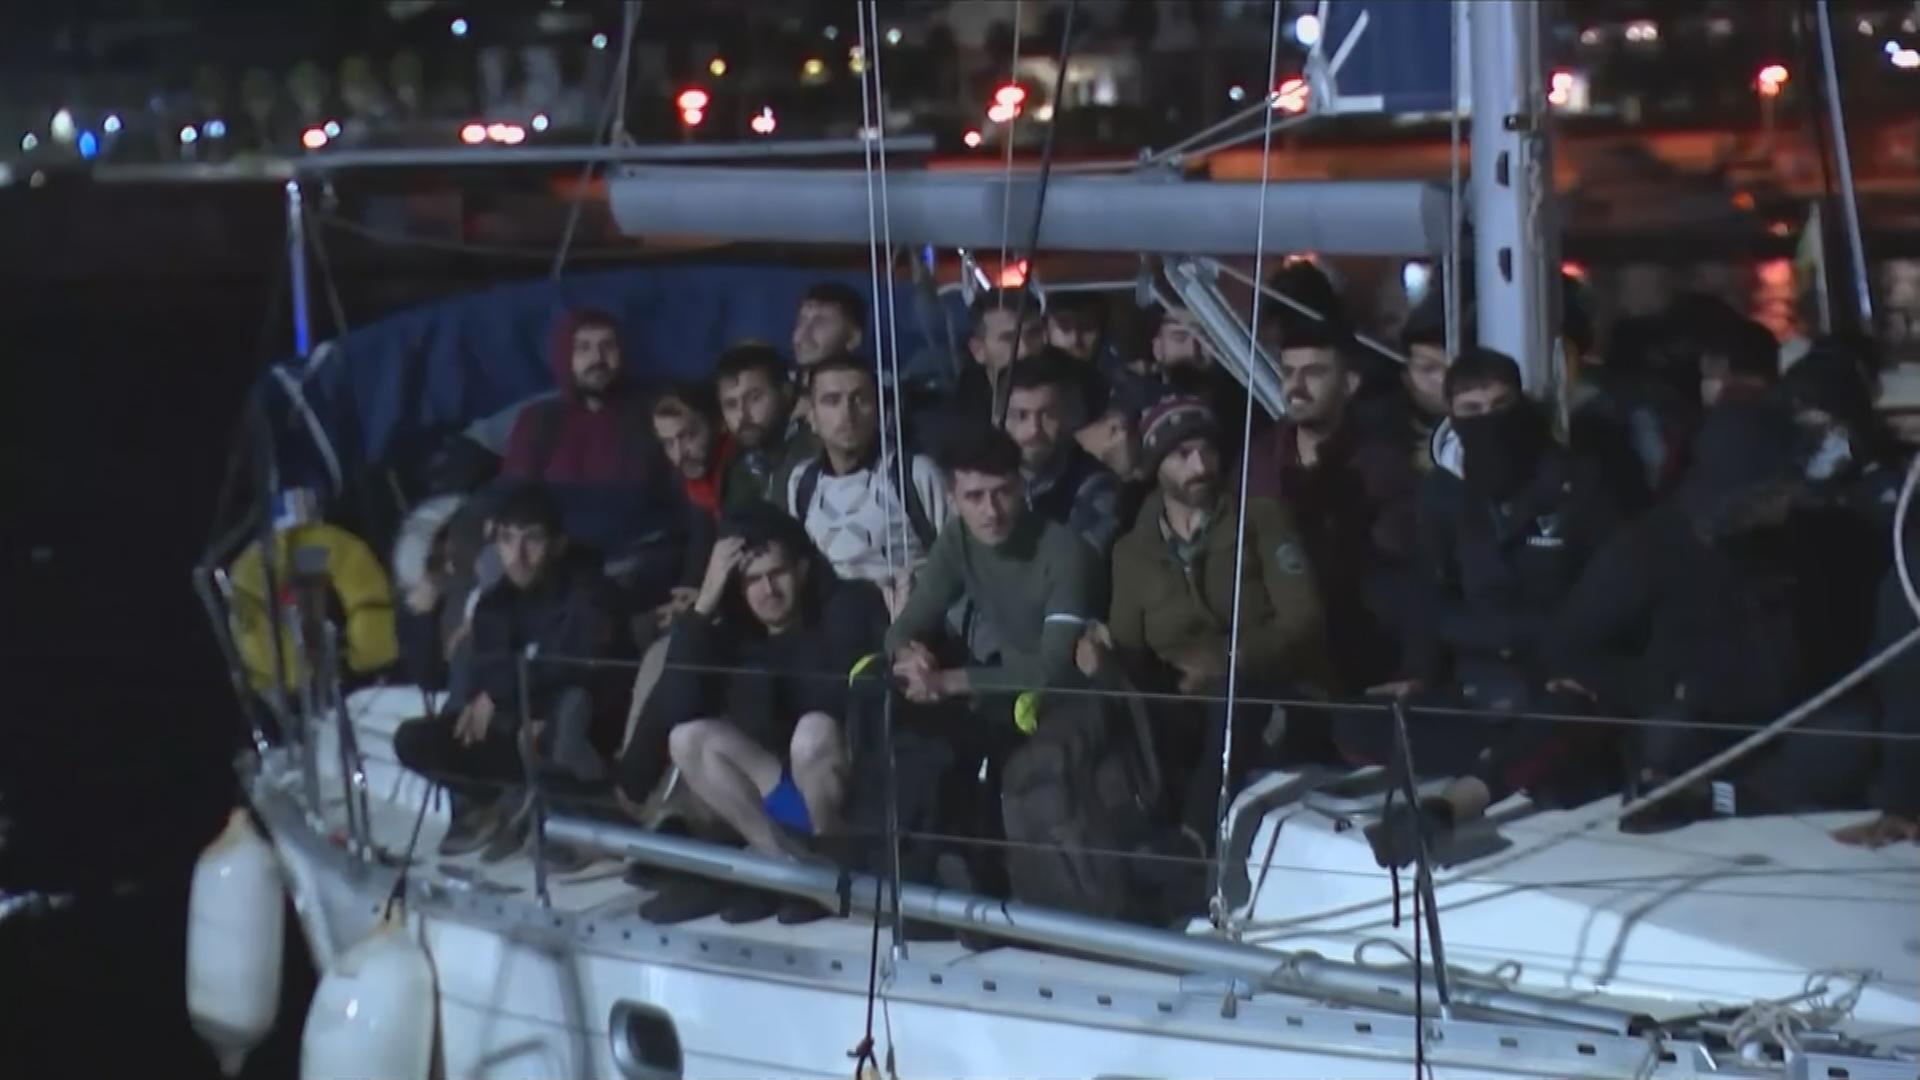 Flüchtlinge bei Nacht an Deck eines Segelbottes, das in einem italienischen Hafen liegt am 9.11.2021